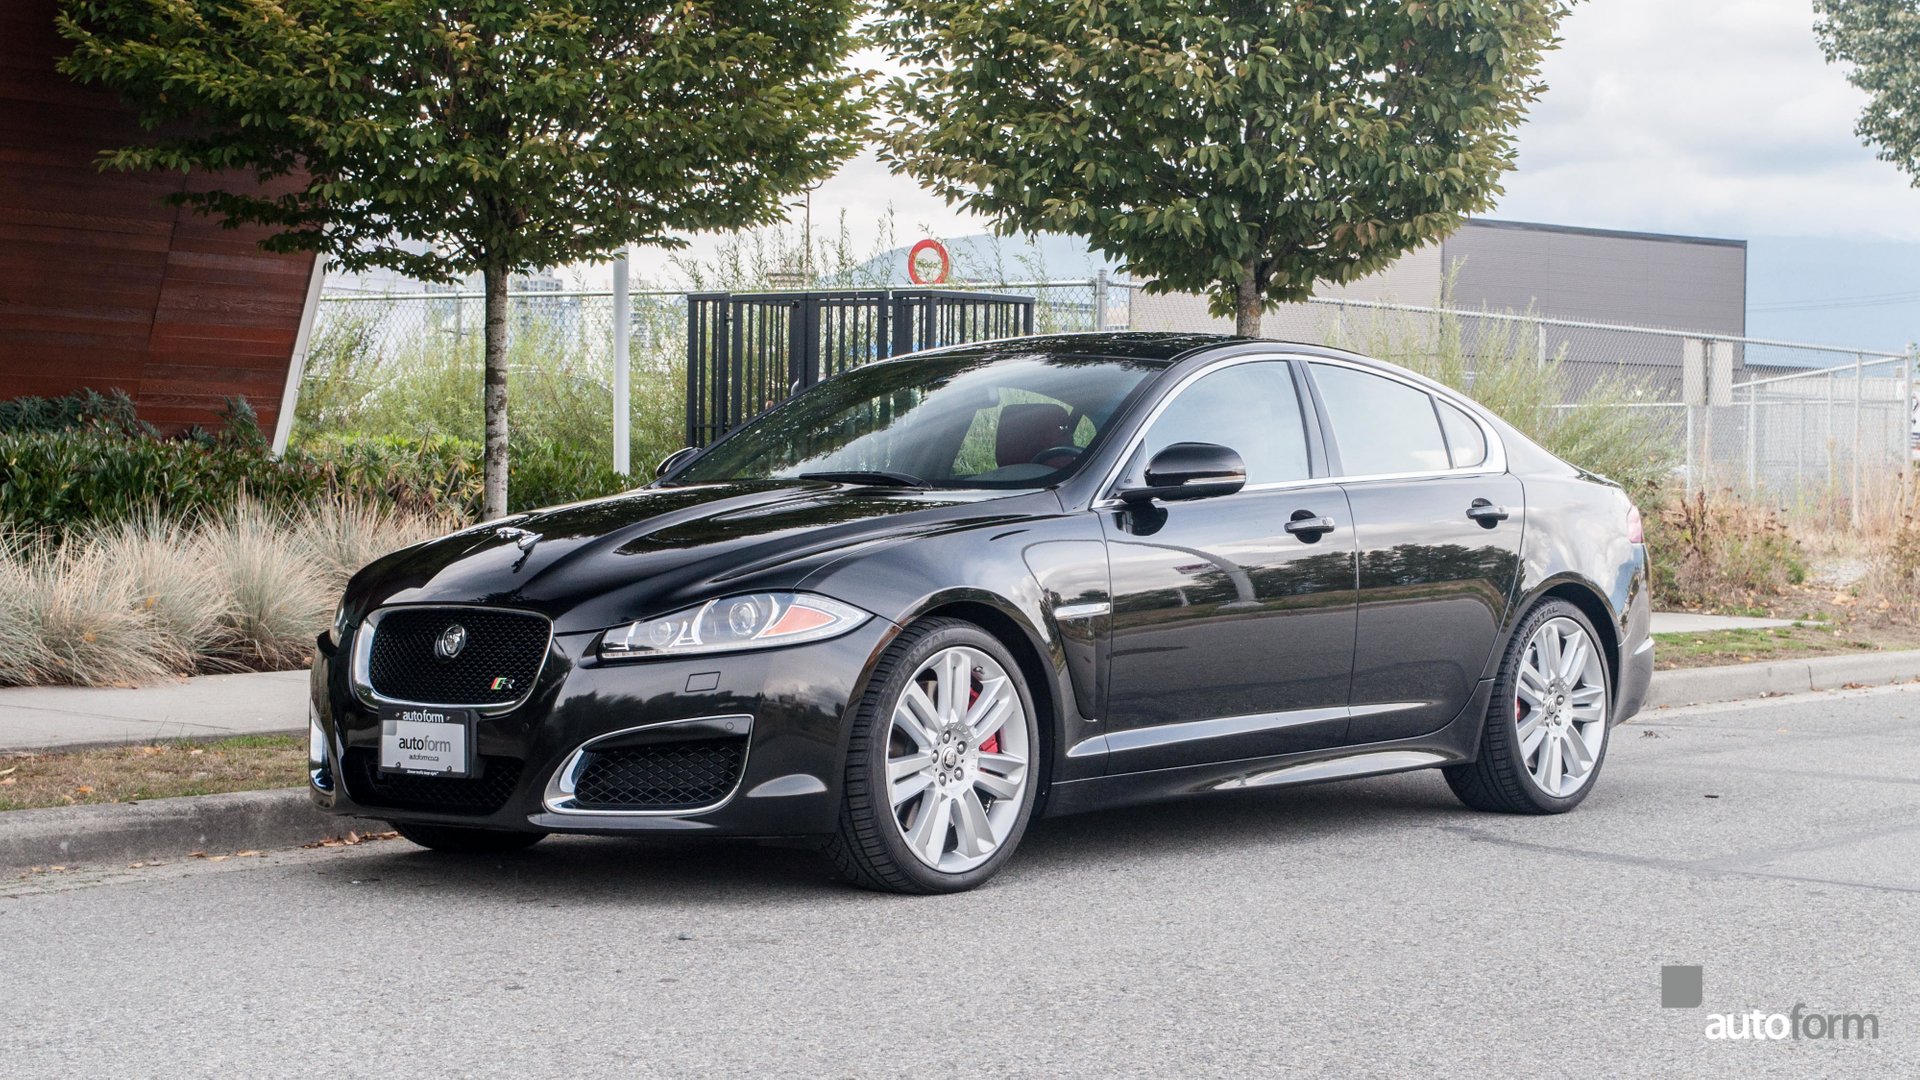 2013 Jaguar XFR | Autoform